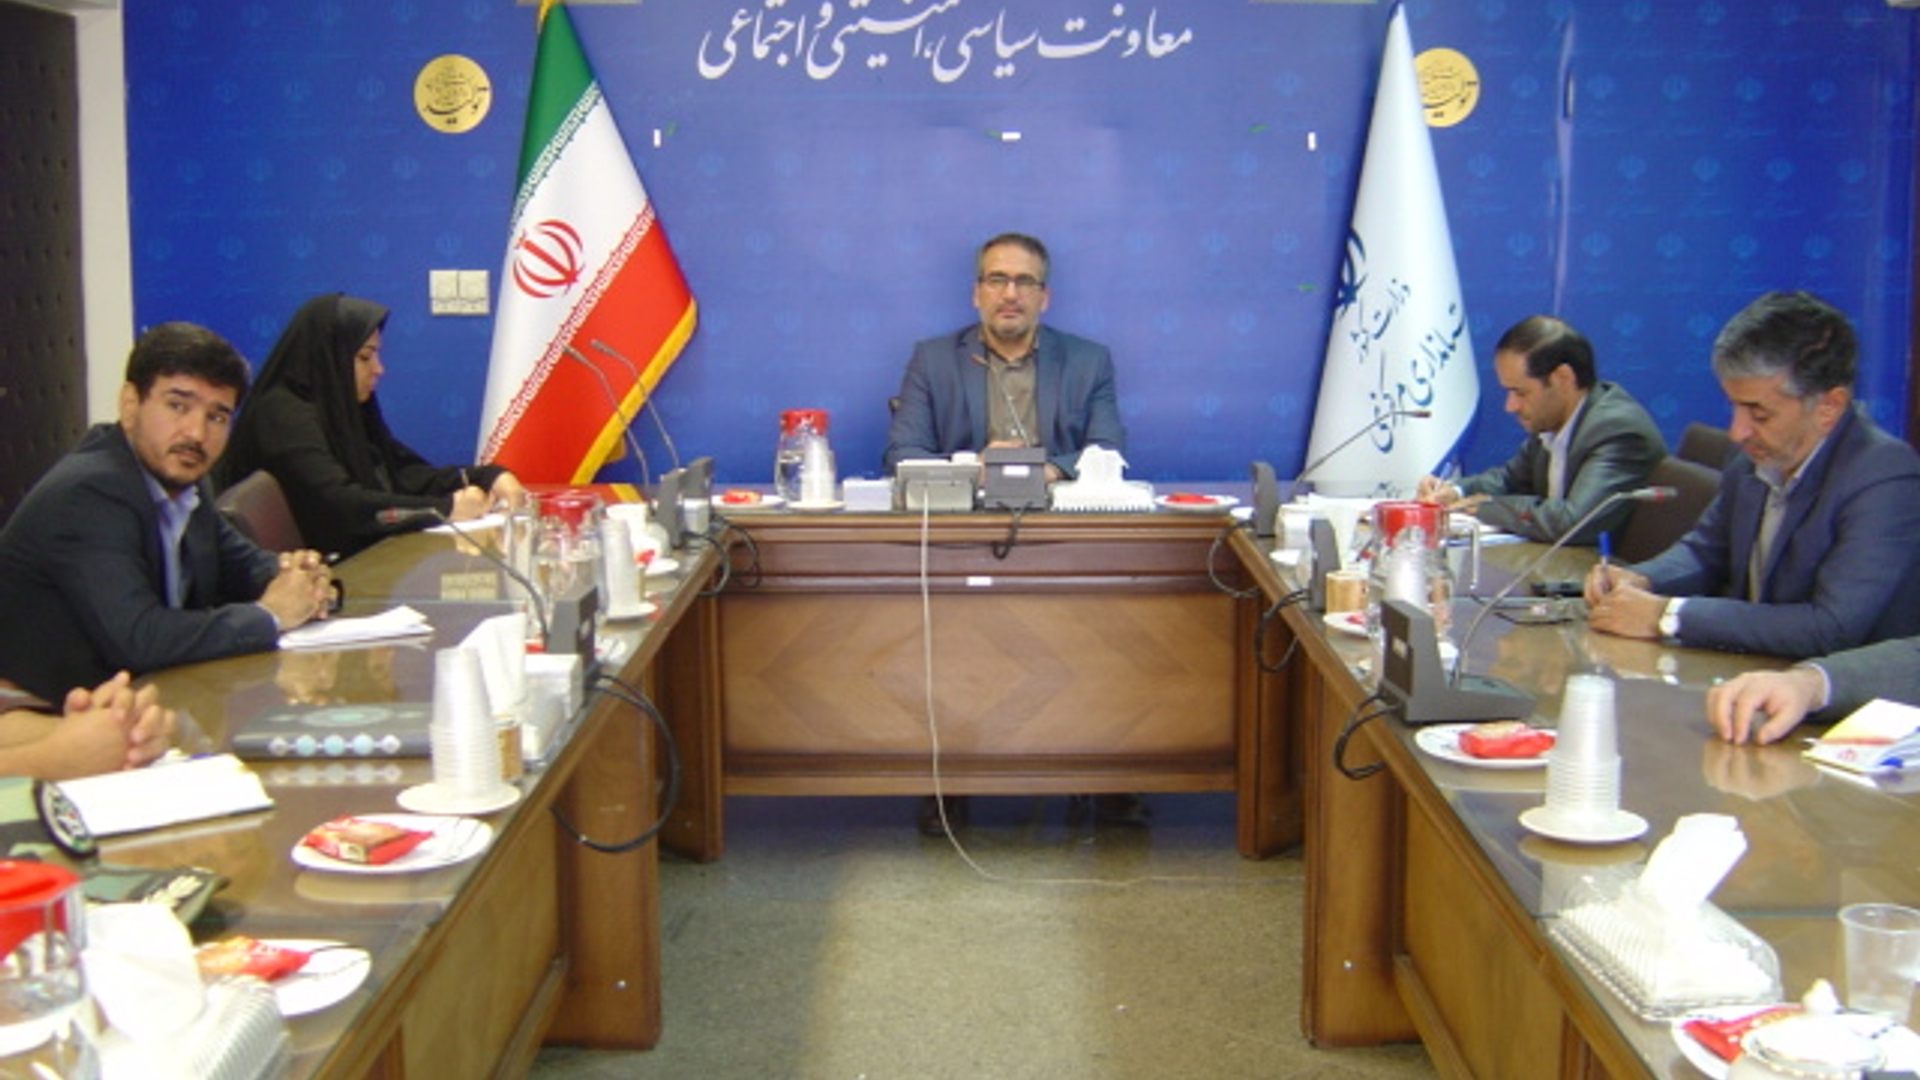 جلسه کمیسیون برآورد اطلاعات استان ساعت 30-8 صبح روز دوشنبه مورخ 28-9-1401 به ریاست آقای رحیمی تبار مدیر کل امنیتی و انتظامی برگزار گردید.